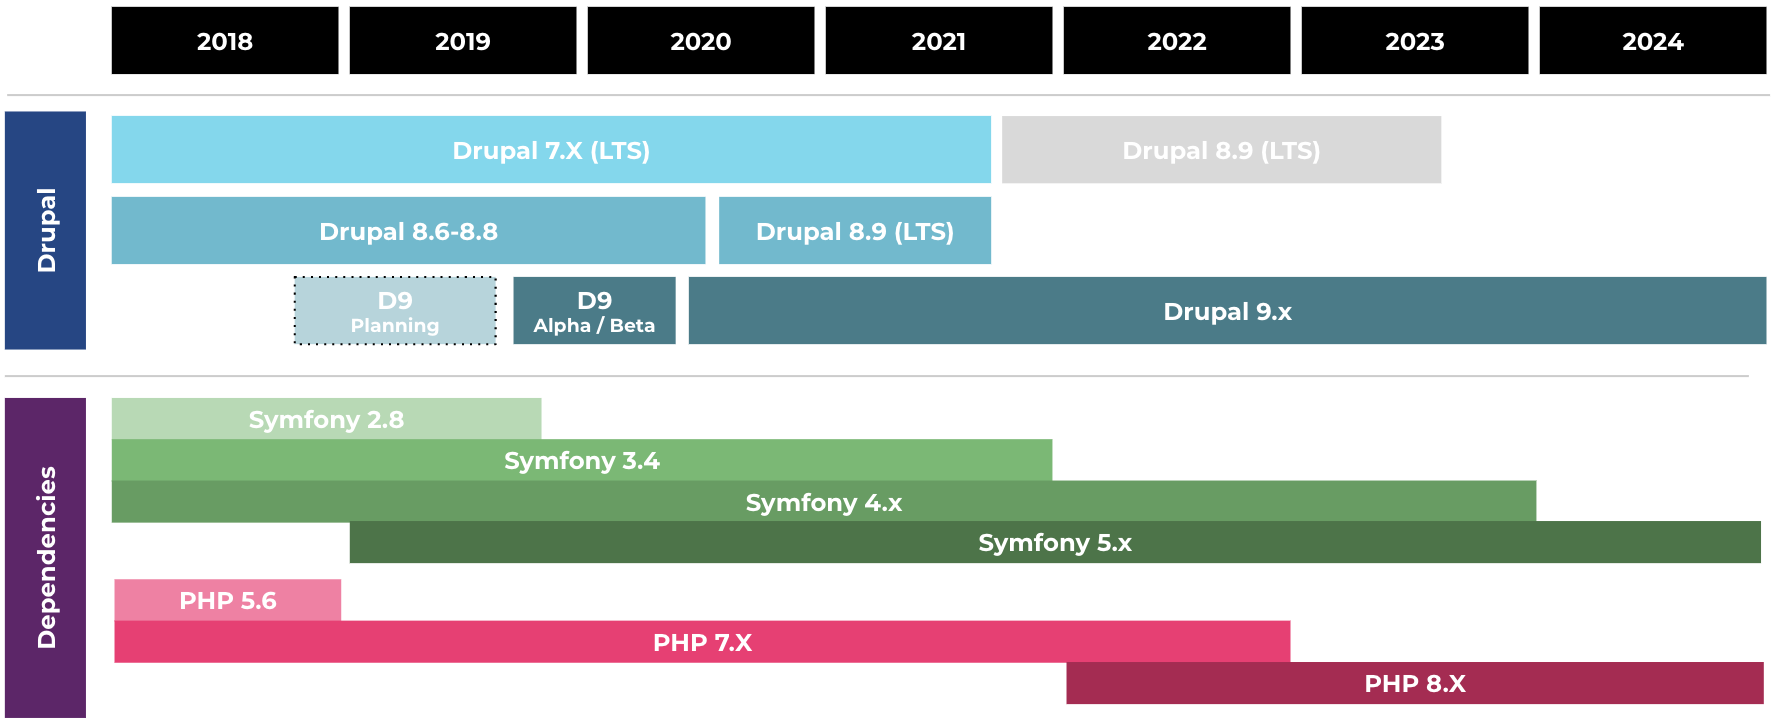 Image of Drupal 9 upgrade timeline compared to Symfony release timeline